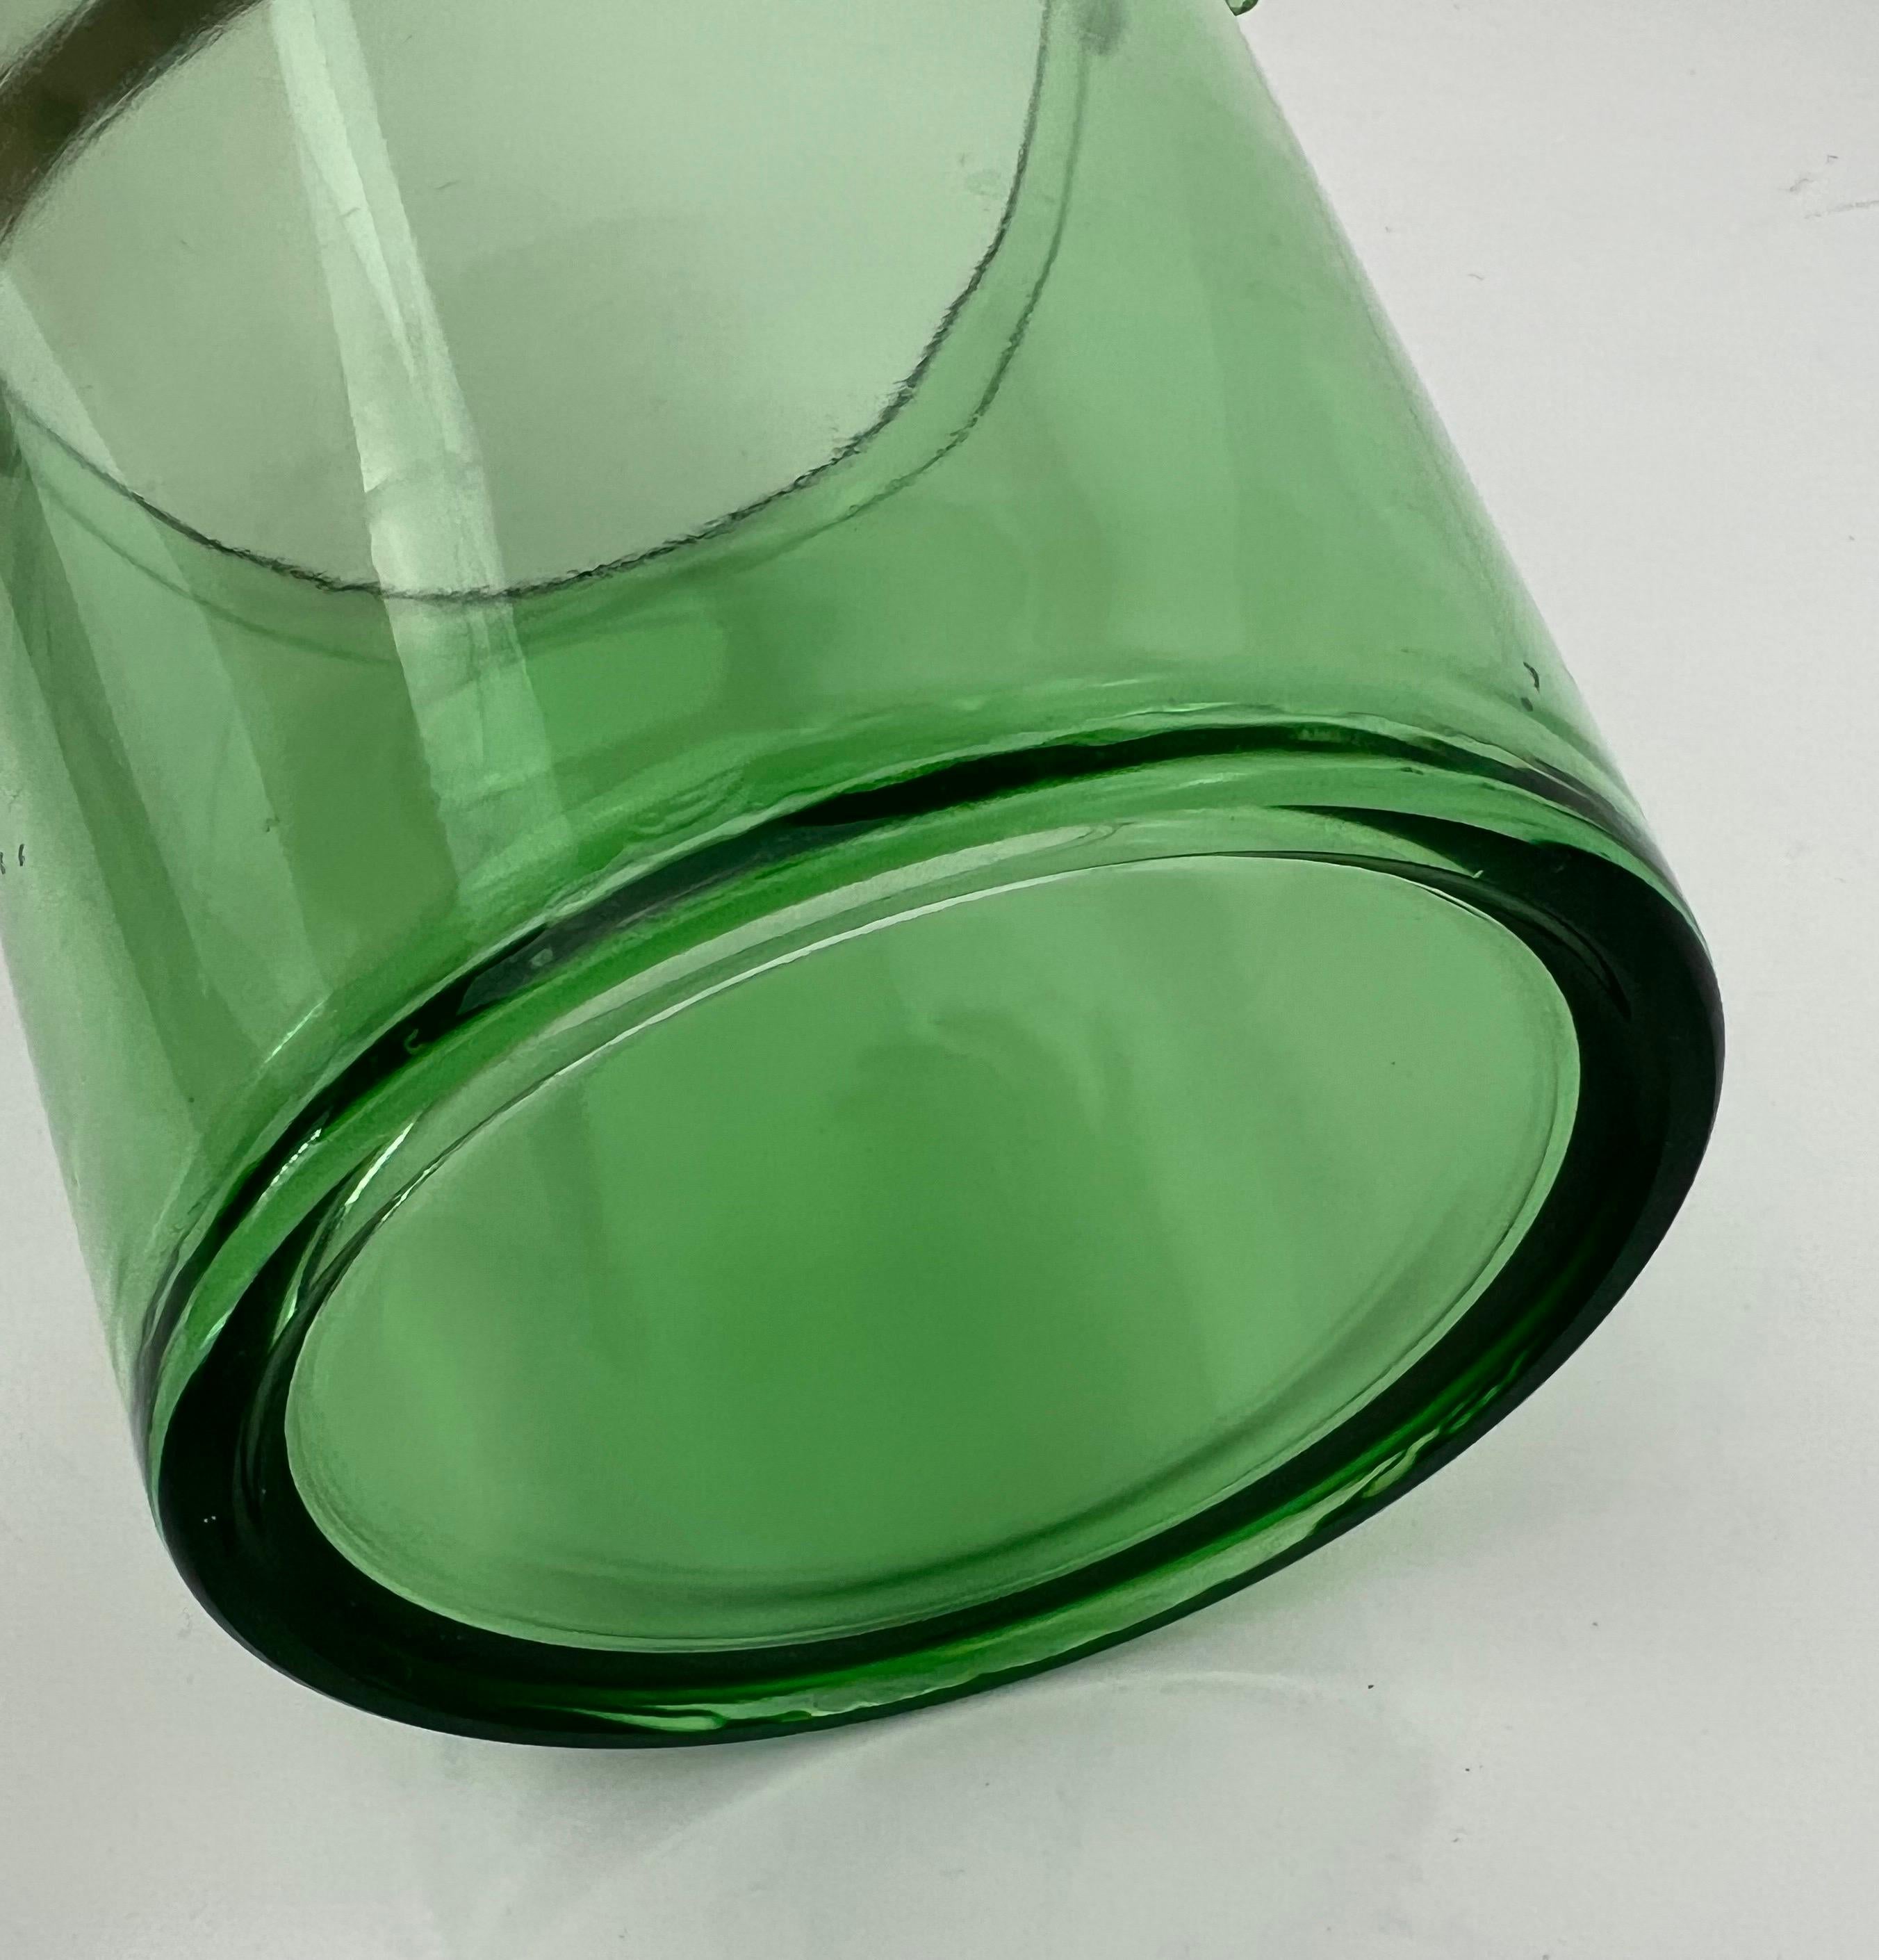 glass bucket with handle